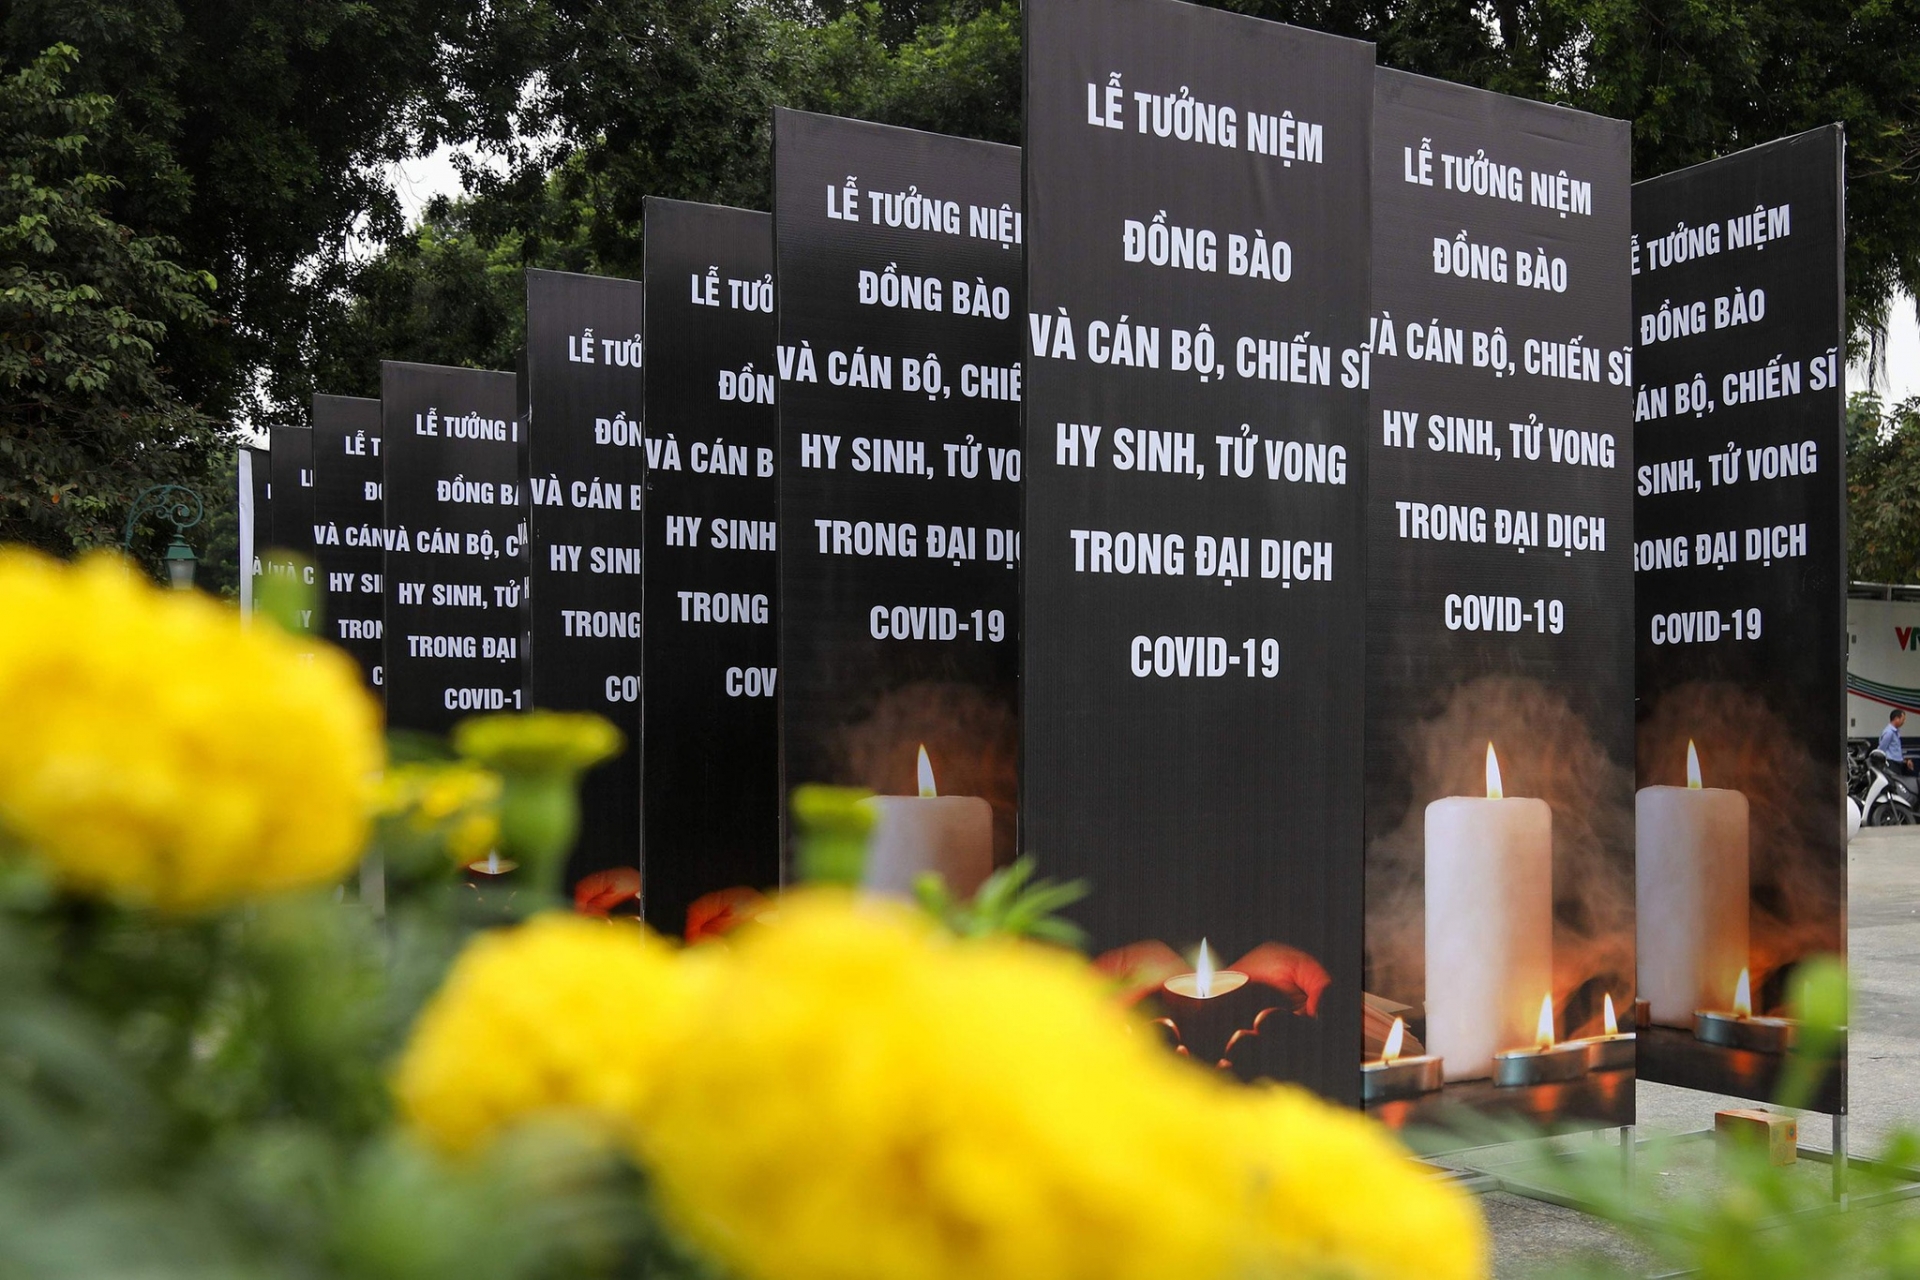 Vào lúc 20h hôm nay (19/11), Ủy ban Trung ương Mặt trận Tổ quốc Việt Nam và UBND Thành phố Hồ Chí Minh tổ chức Lễ tưởng niệm đồng bào tử vong và cán bộ, chiến sĩ hy sinh trong đại dịch COVID-19